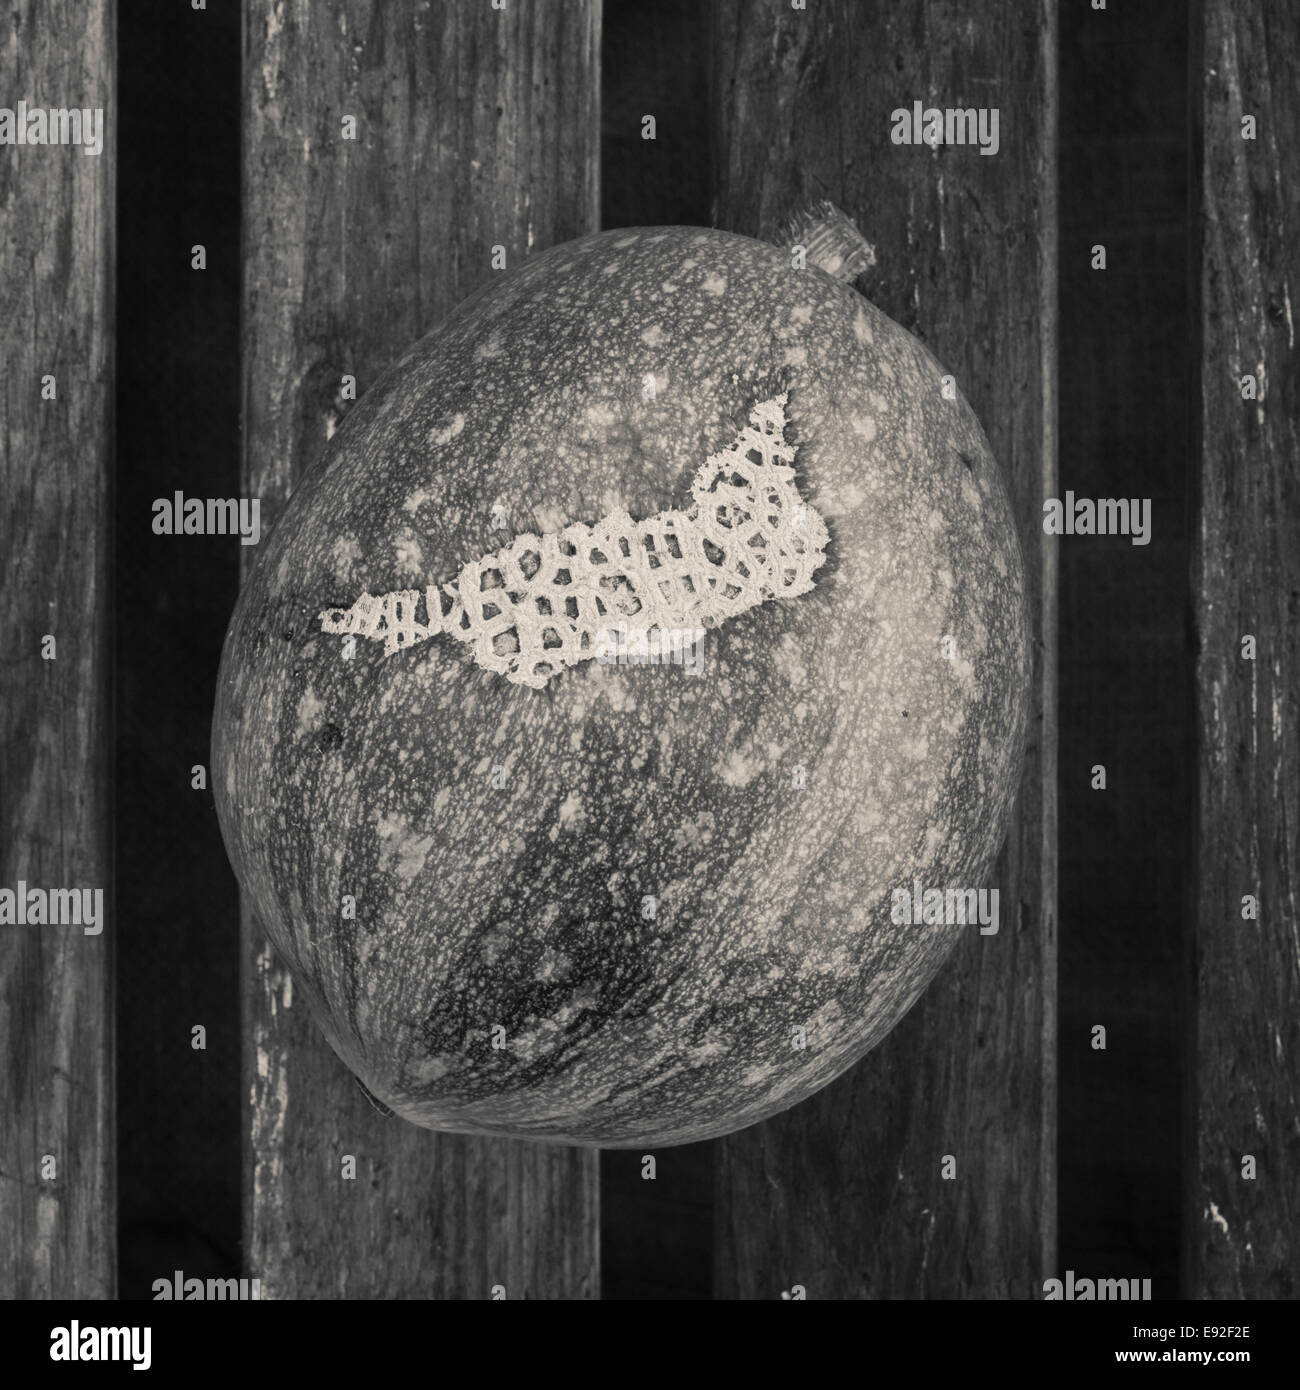 Toujours en noir et blanc image vie de matières organiques sur la surface en bois potiron cultivée Banque D'Images